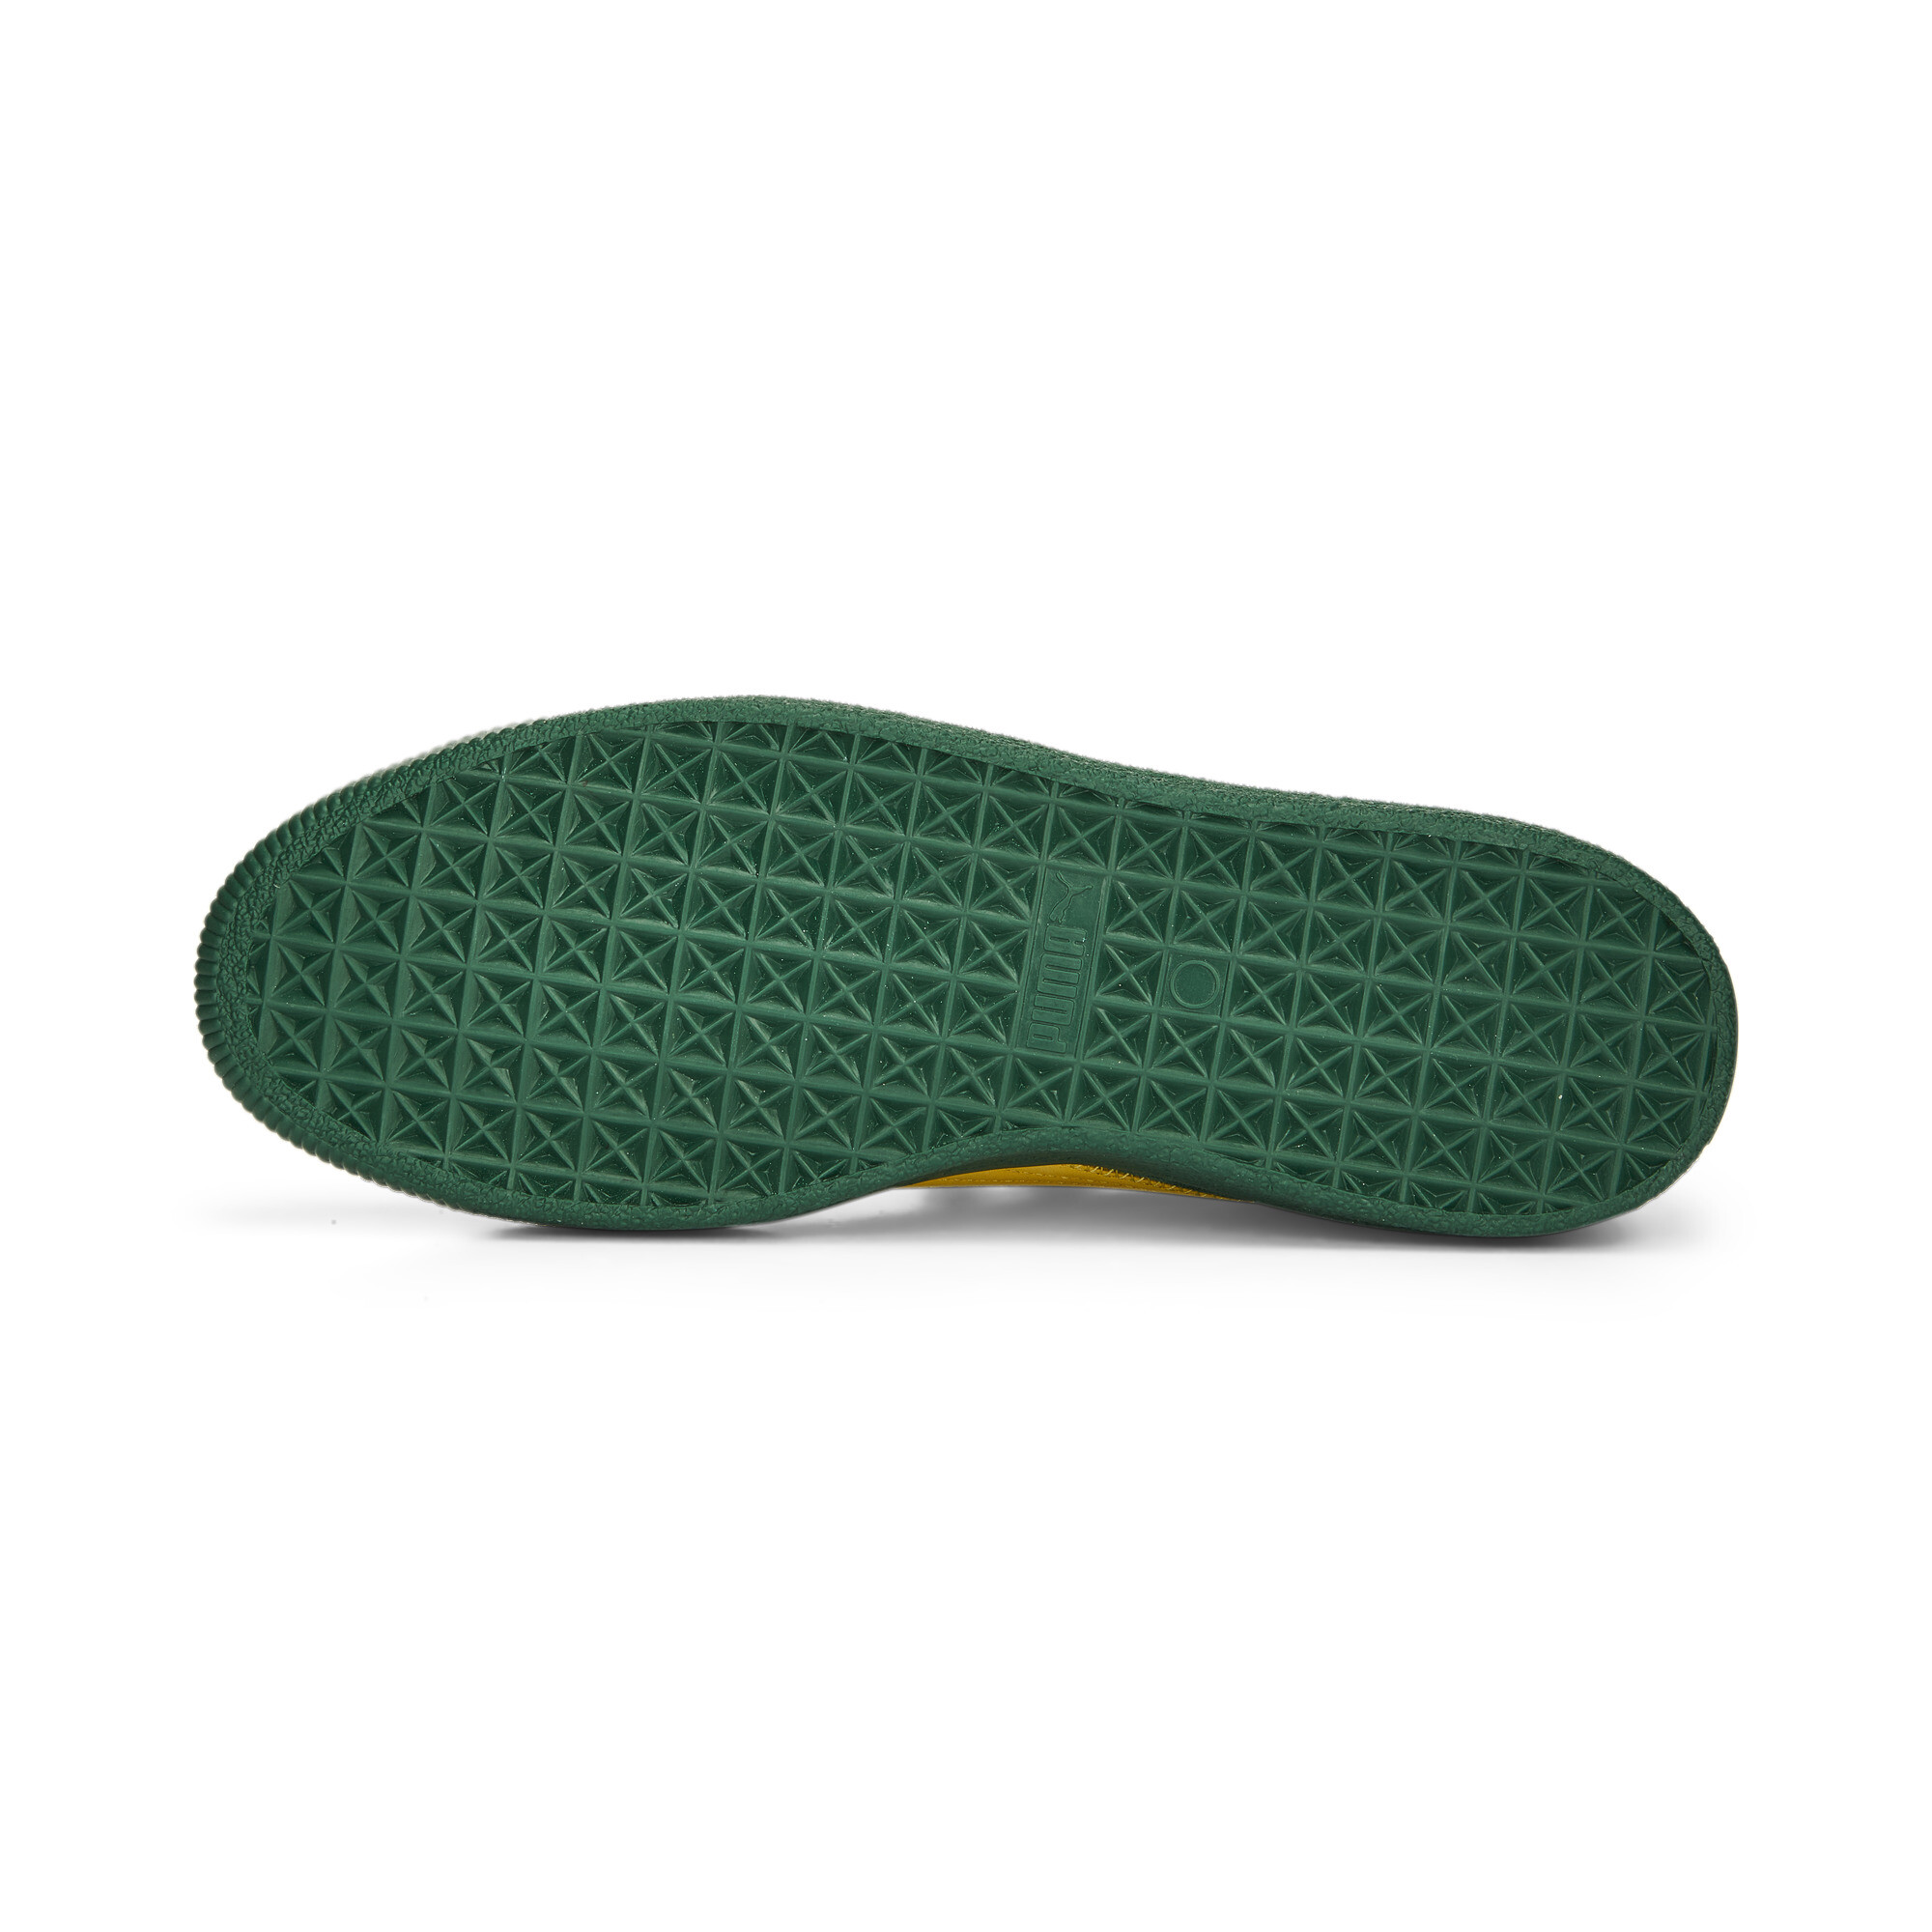 Men's Clyde Super PUMA Sneakers In 40 - Green, Size EU 38